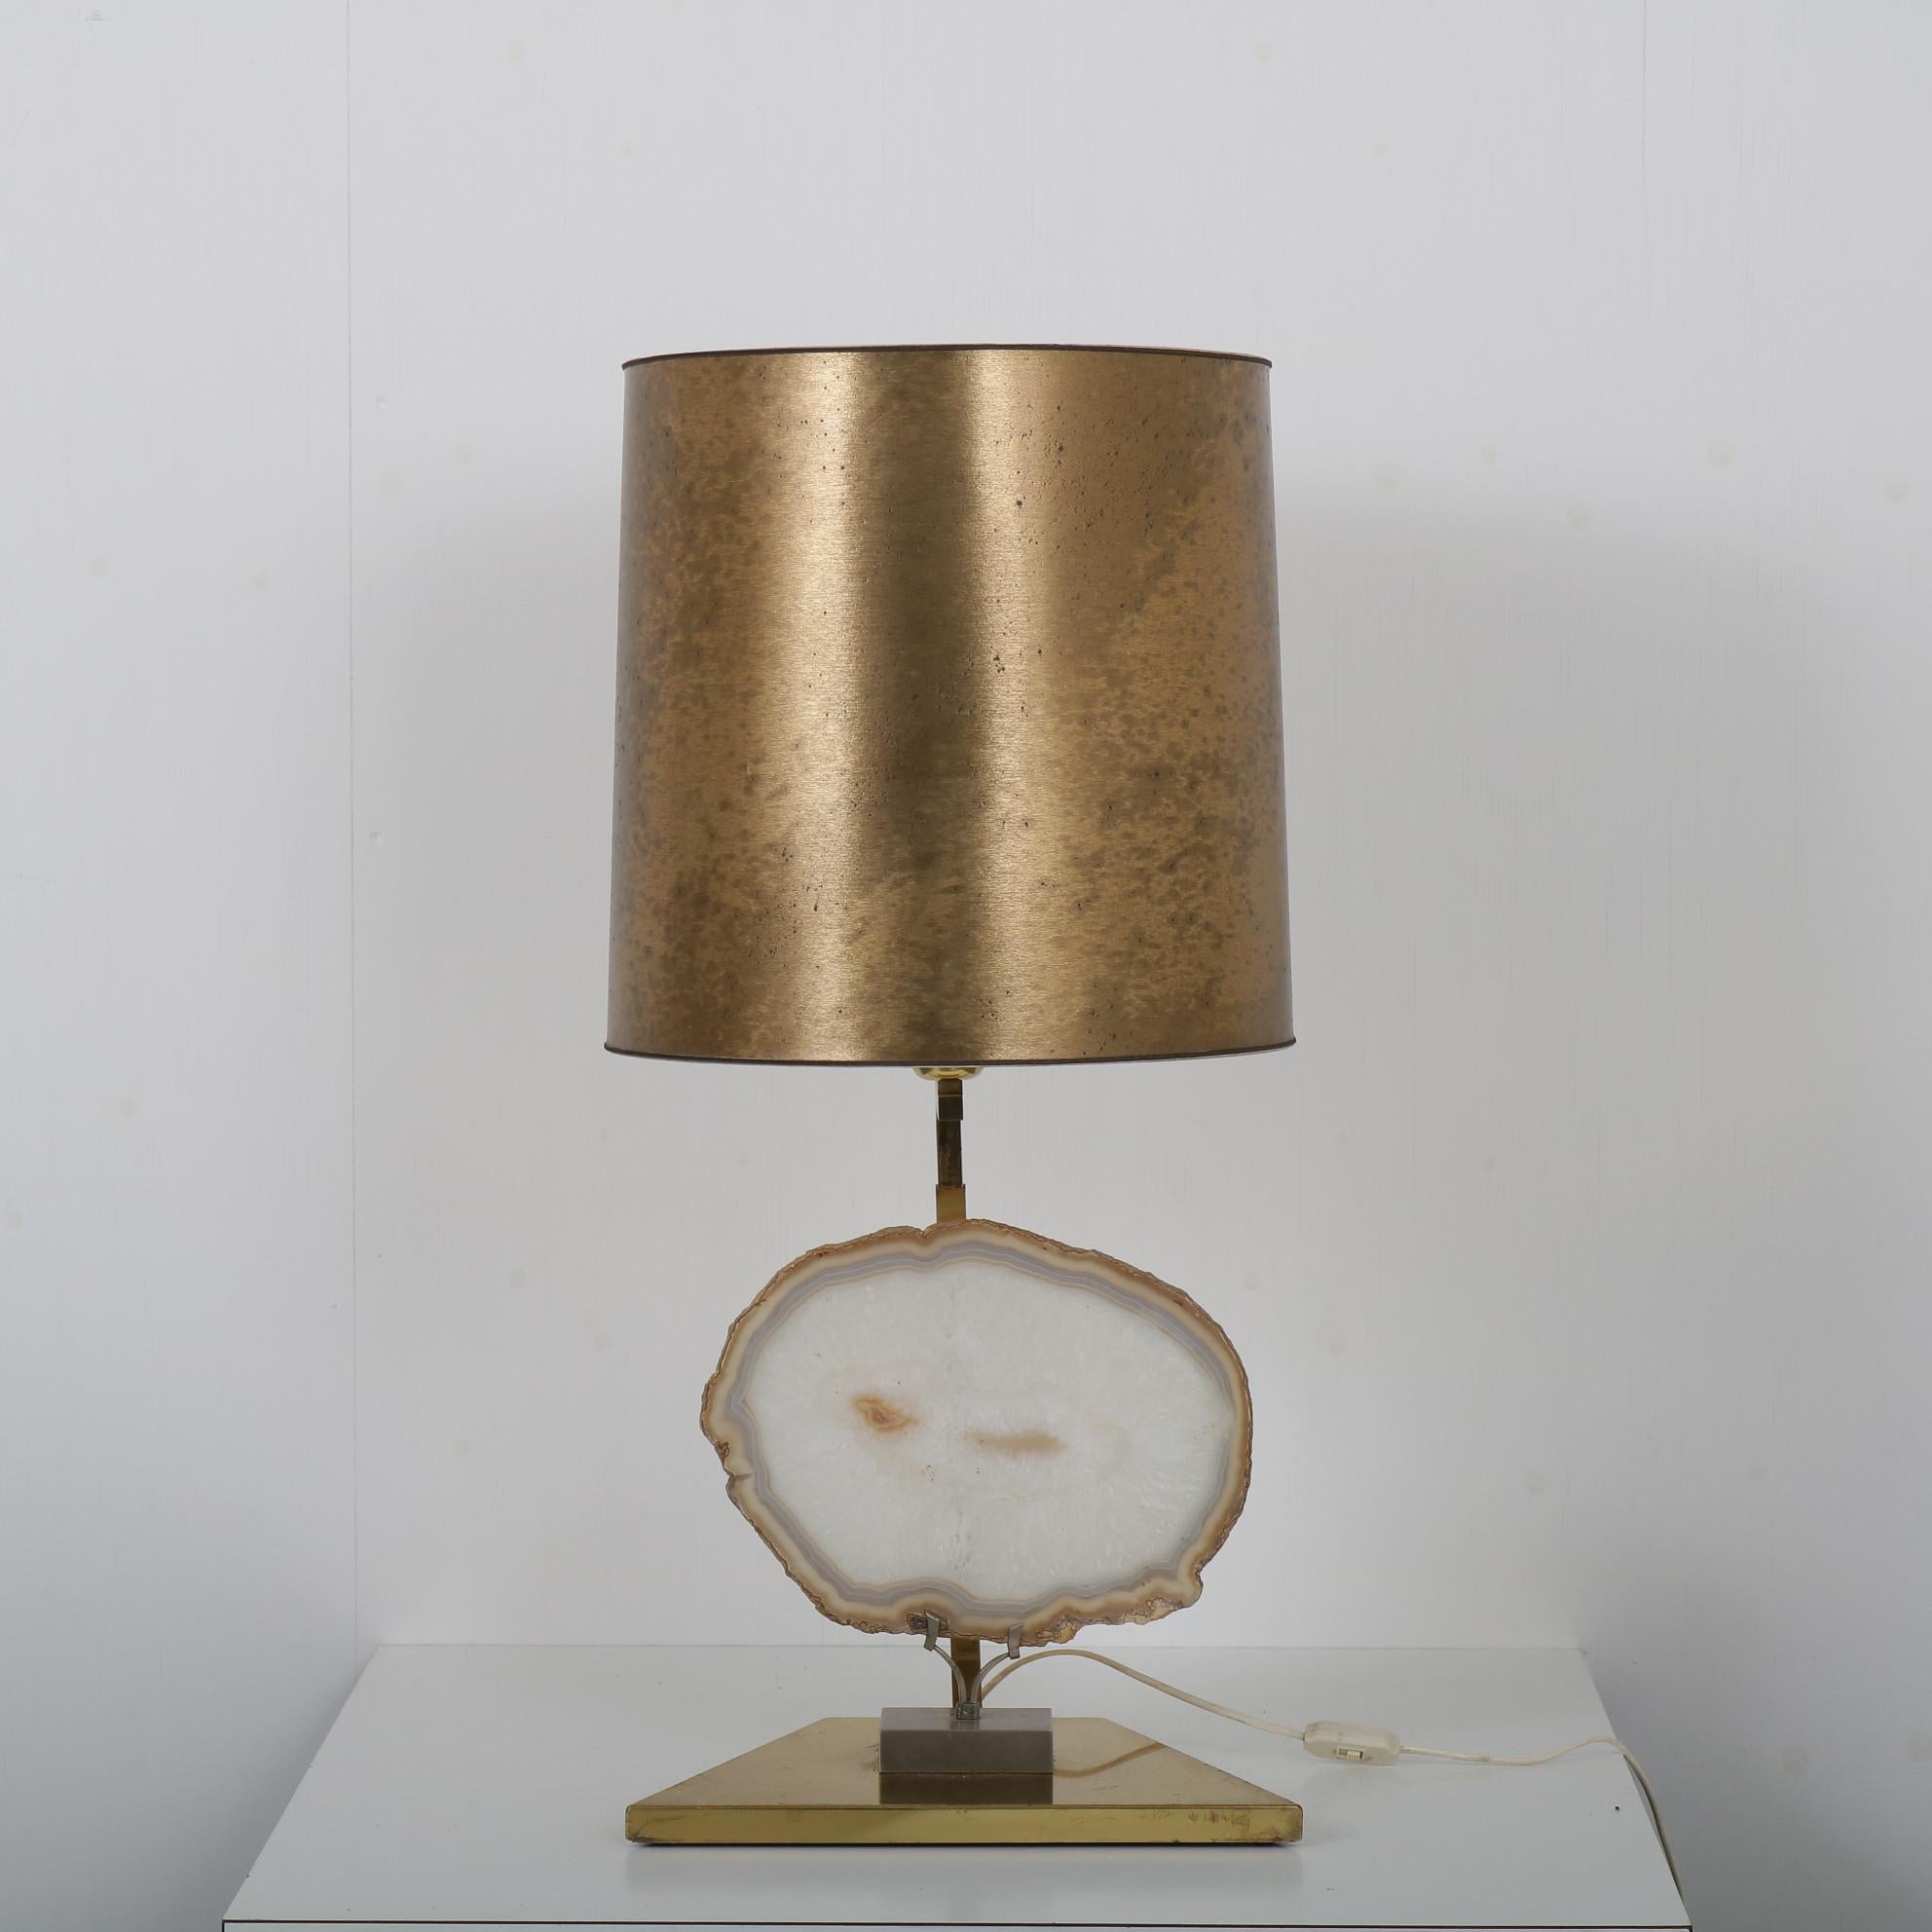 

Une élégante lampe de table avec un grand morceau de pierre d'agate (à la manière de Willy Daro), fabriquée en Belgique vers 1970.

La lampe a une belle base en laiton et un capot assorti. Le véritable point d'attraction est la pierre en agate